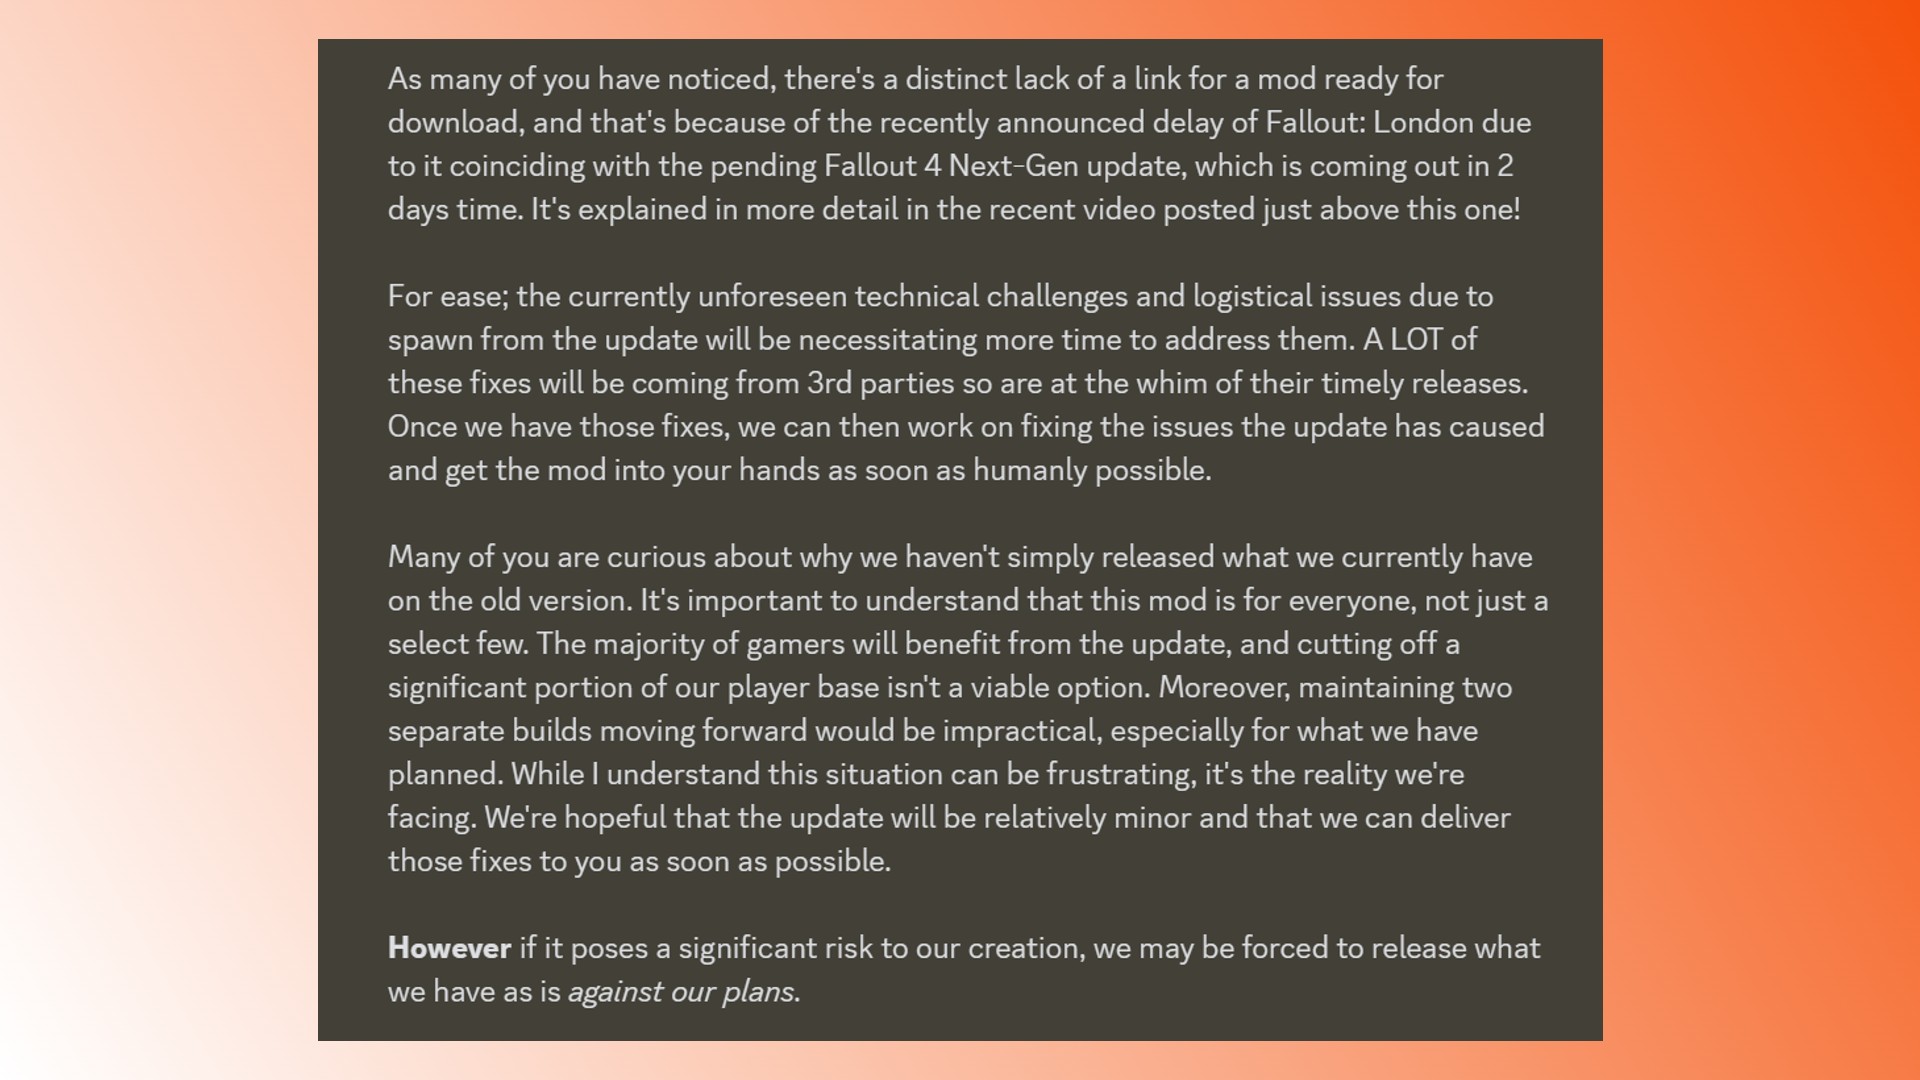 Erscheinungsdatum von Fallout London: Erklärung des Entwicklers der Fallout 4-Mod Fallout London